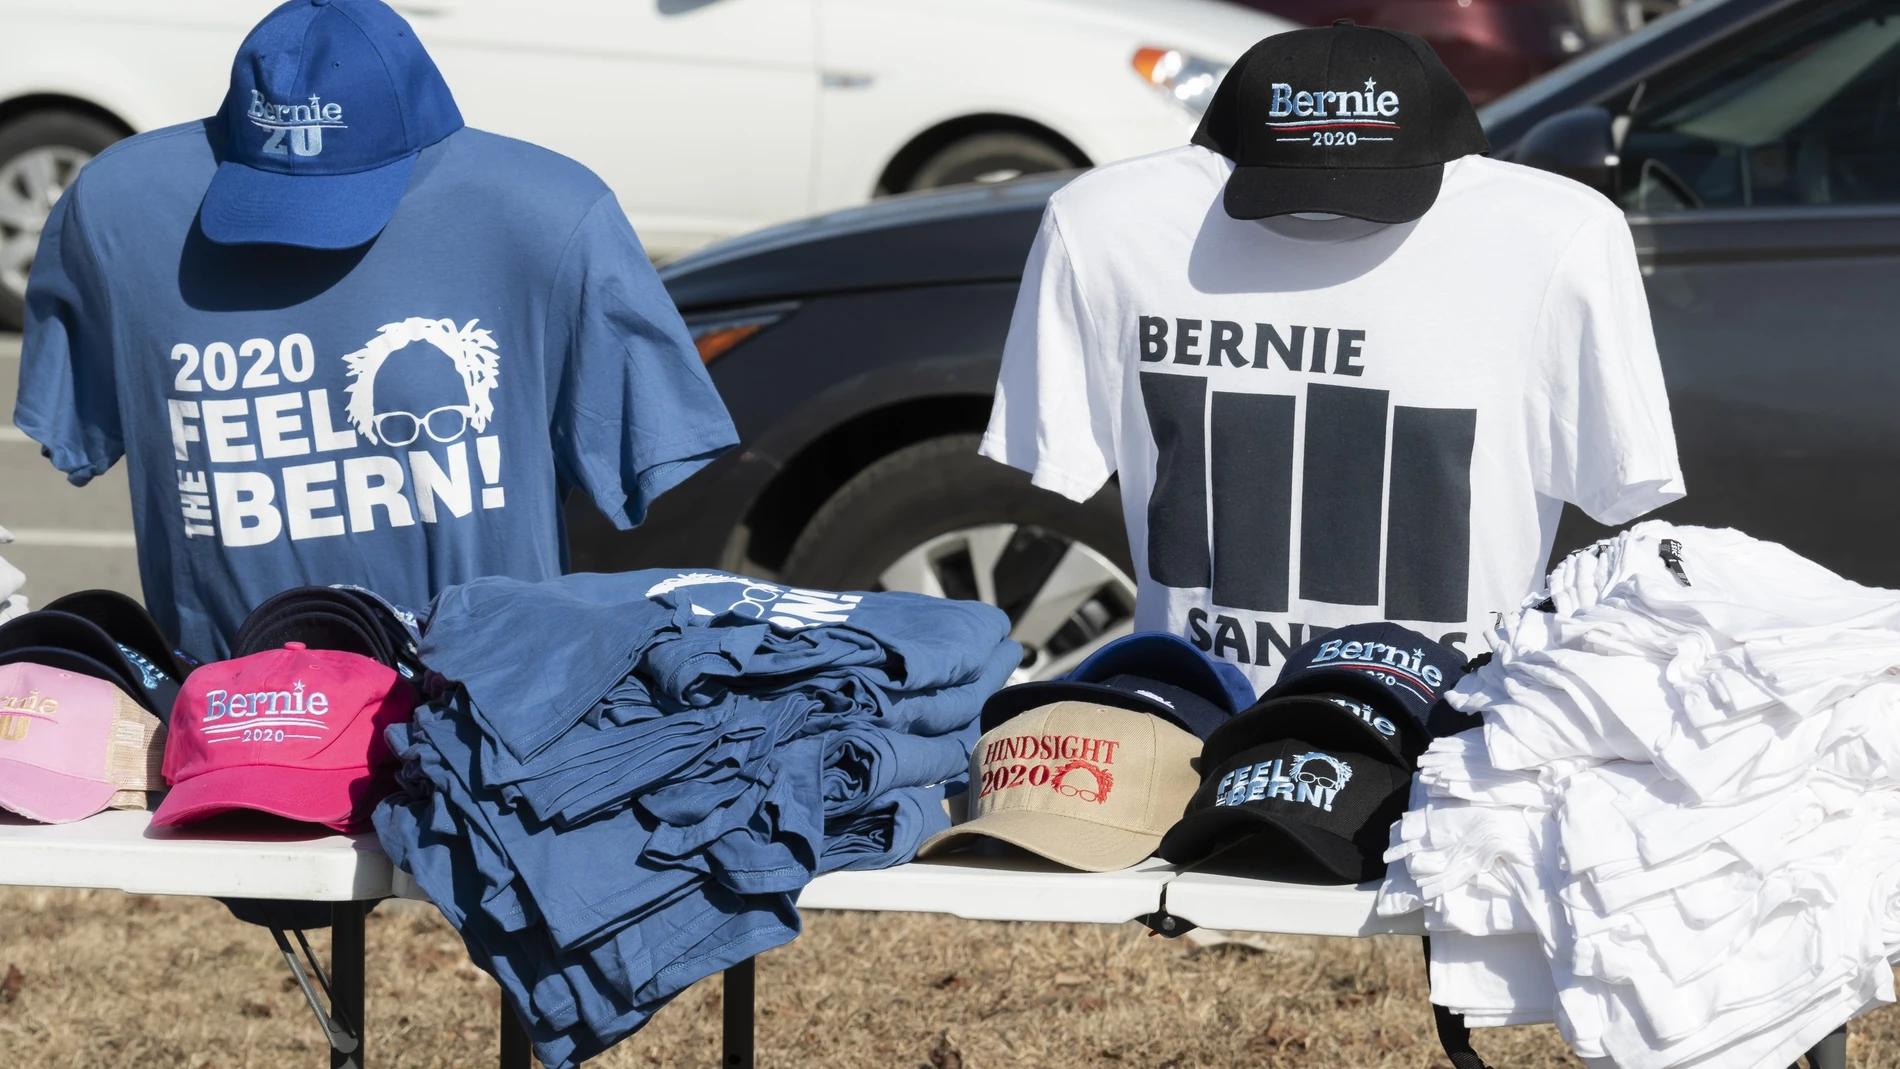 Bernie campaigns in New Hampshire